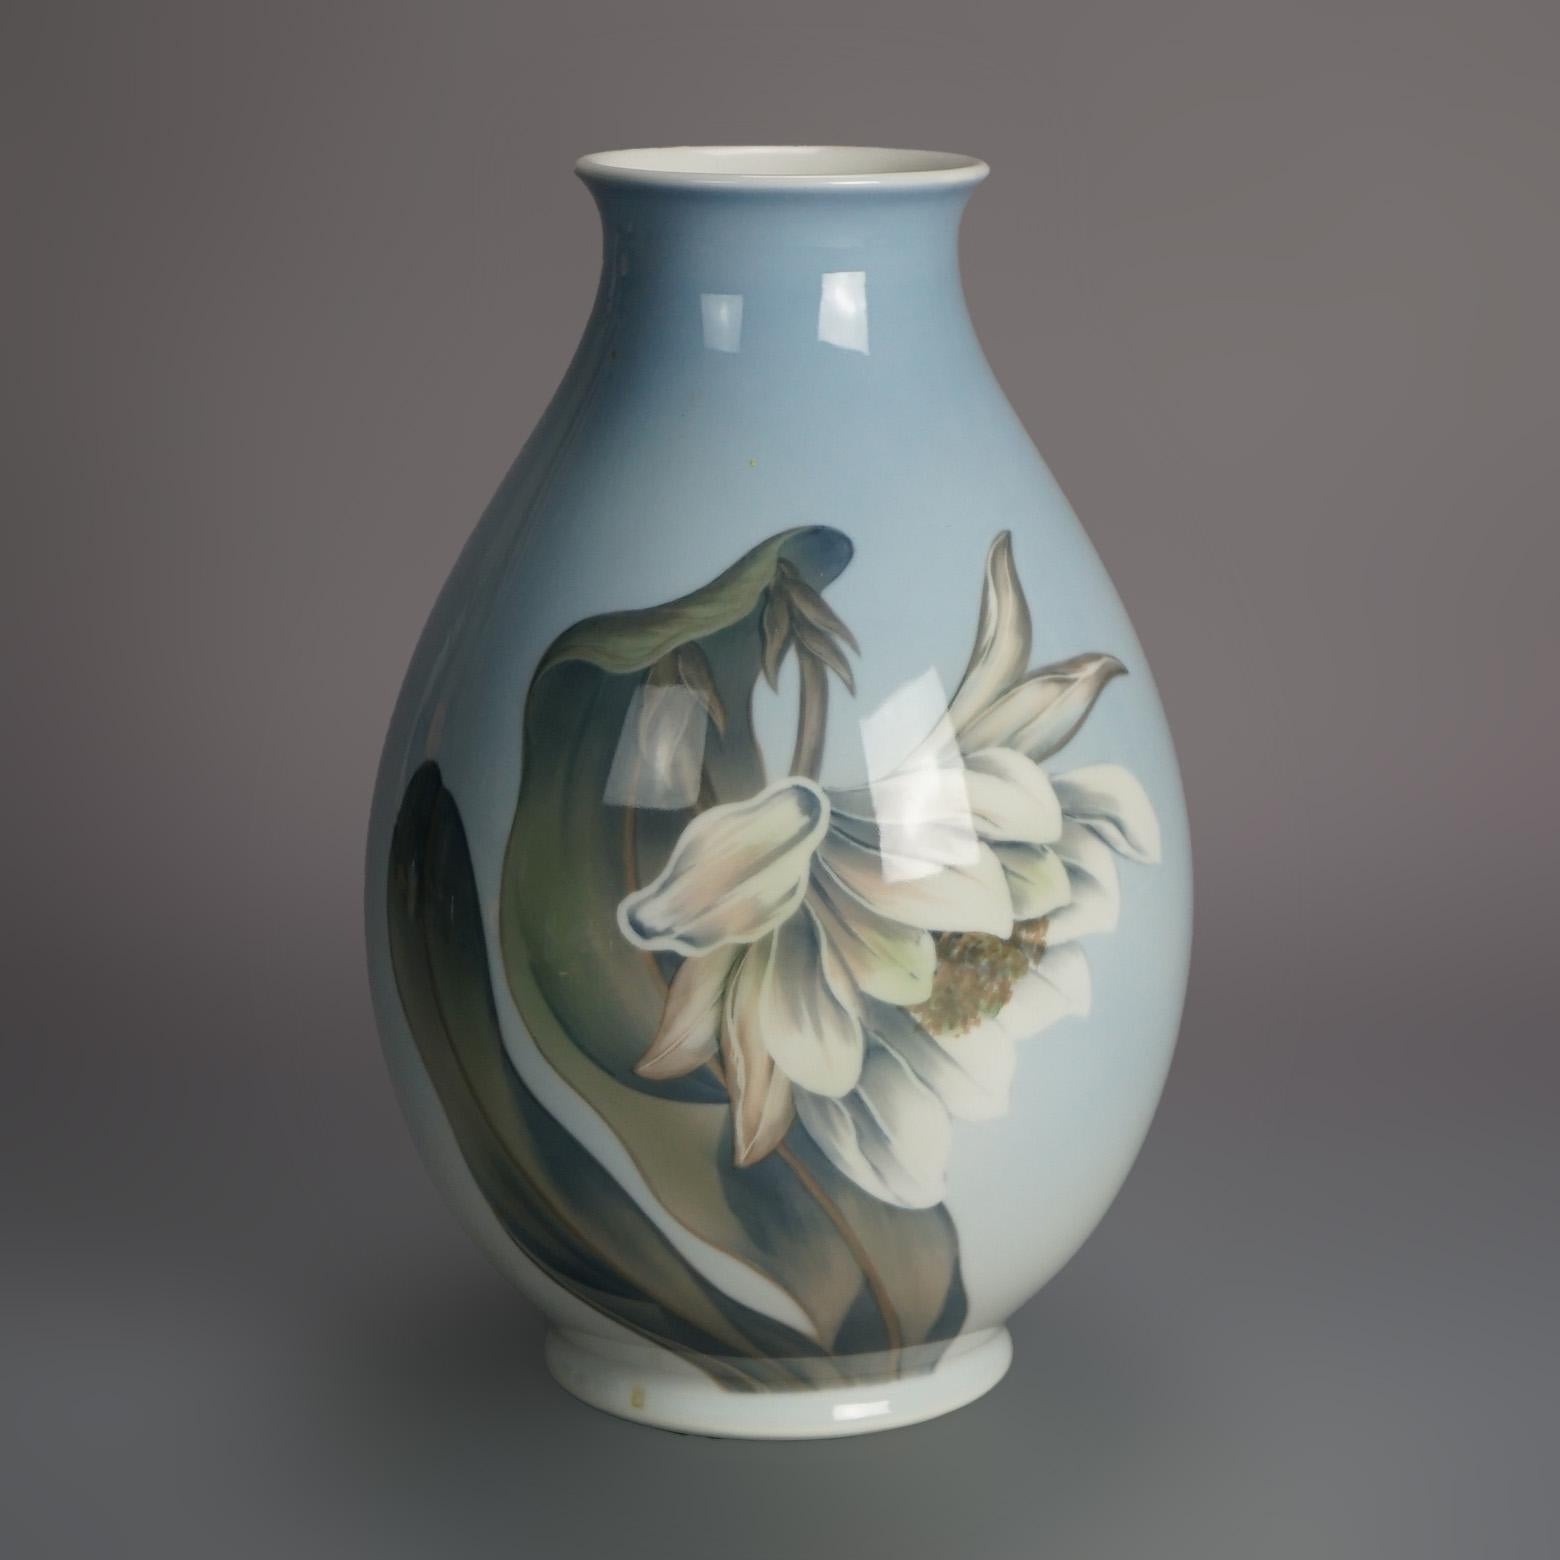 Antique Royal Copenhagen Porcelain Hand Painted Floral Vase with Butterflies C1930

Measures - 11.25